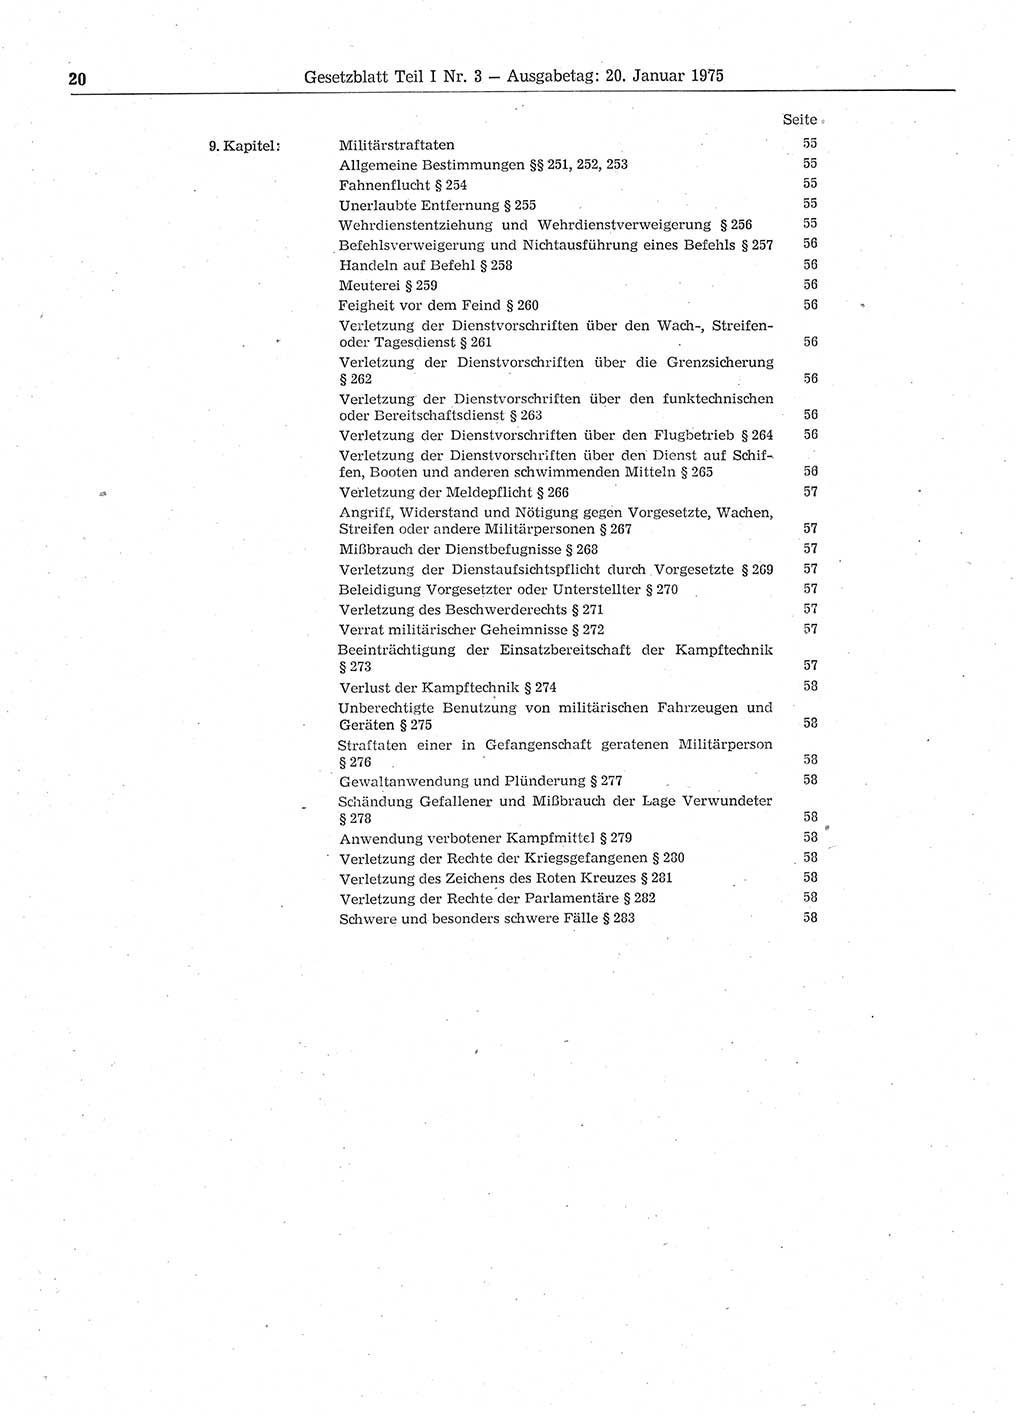 Gesetzblatt (GBl.) der Deutschen Demokratischen Republik (DDR) Teil Ⅰ 1975, Seite 20 (GBl. DDR Ⅰ 1975, S. 20)